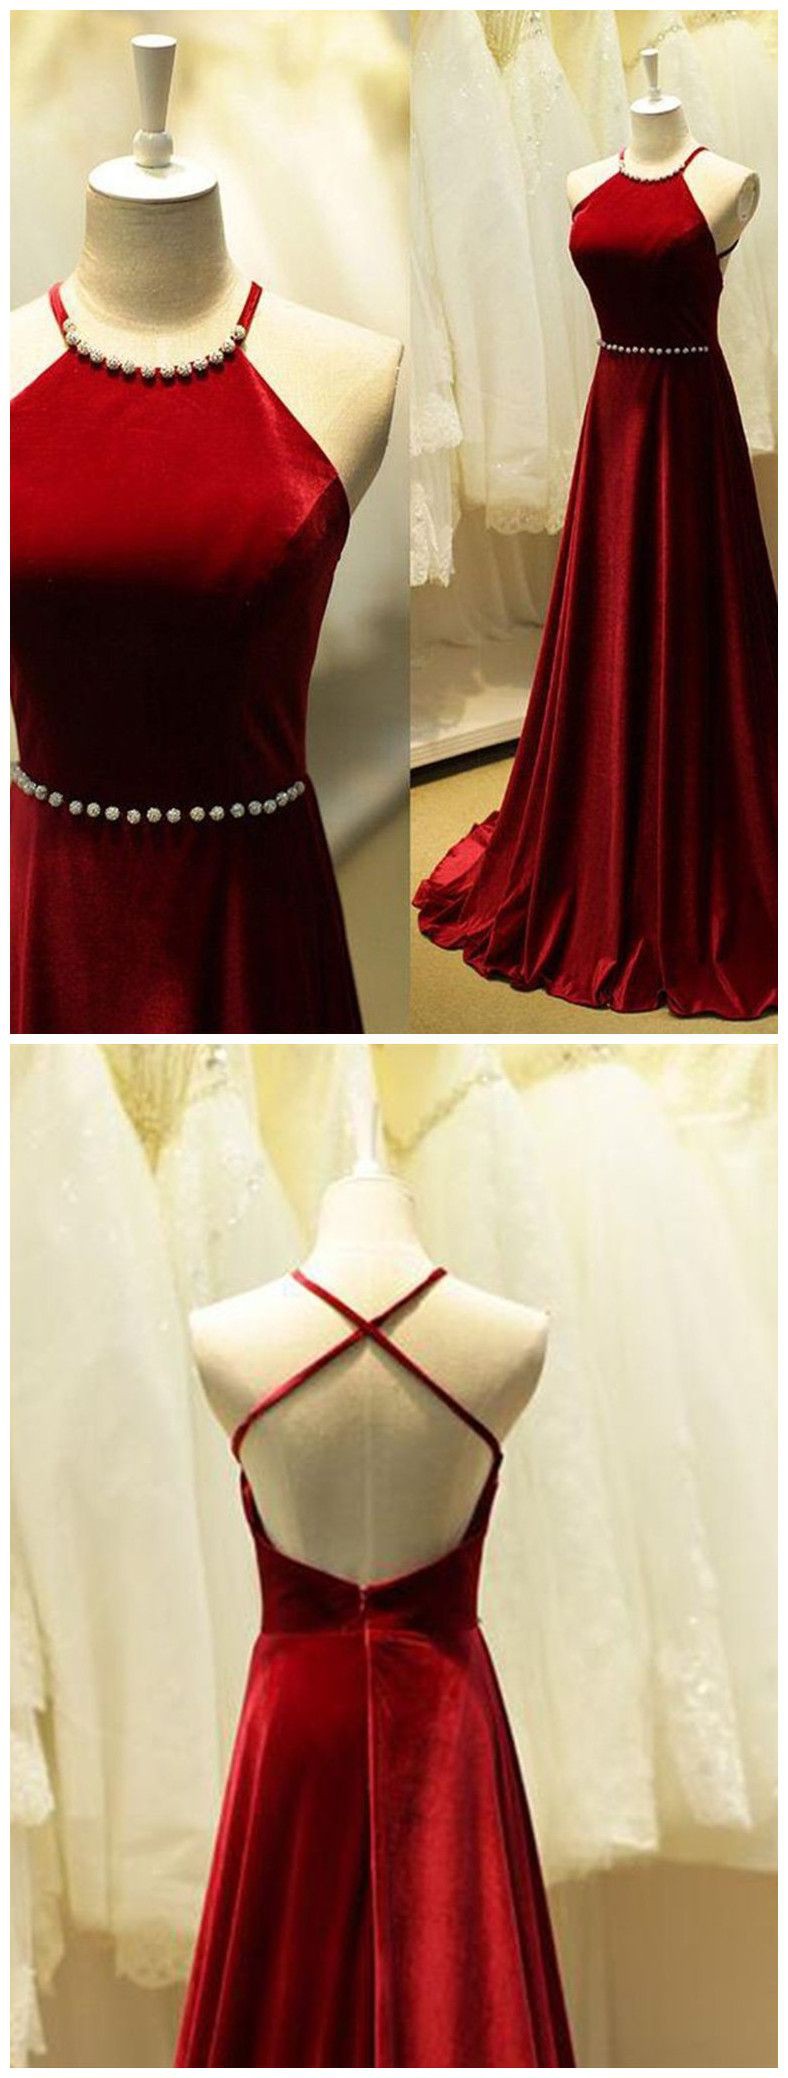 Vestido de noche para niña adolescente: trajes de fiesta,  Vestido de novia,  Vestido de noche,  Trajes de gala,  Traje granate y rojo  